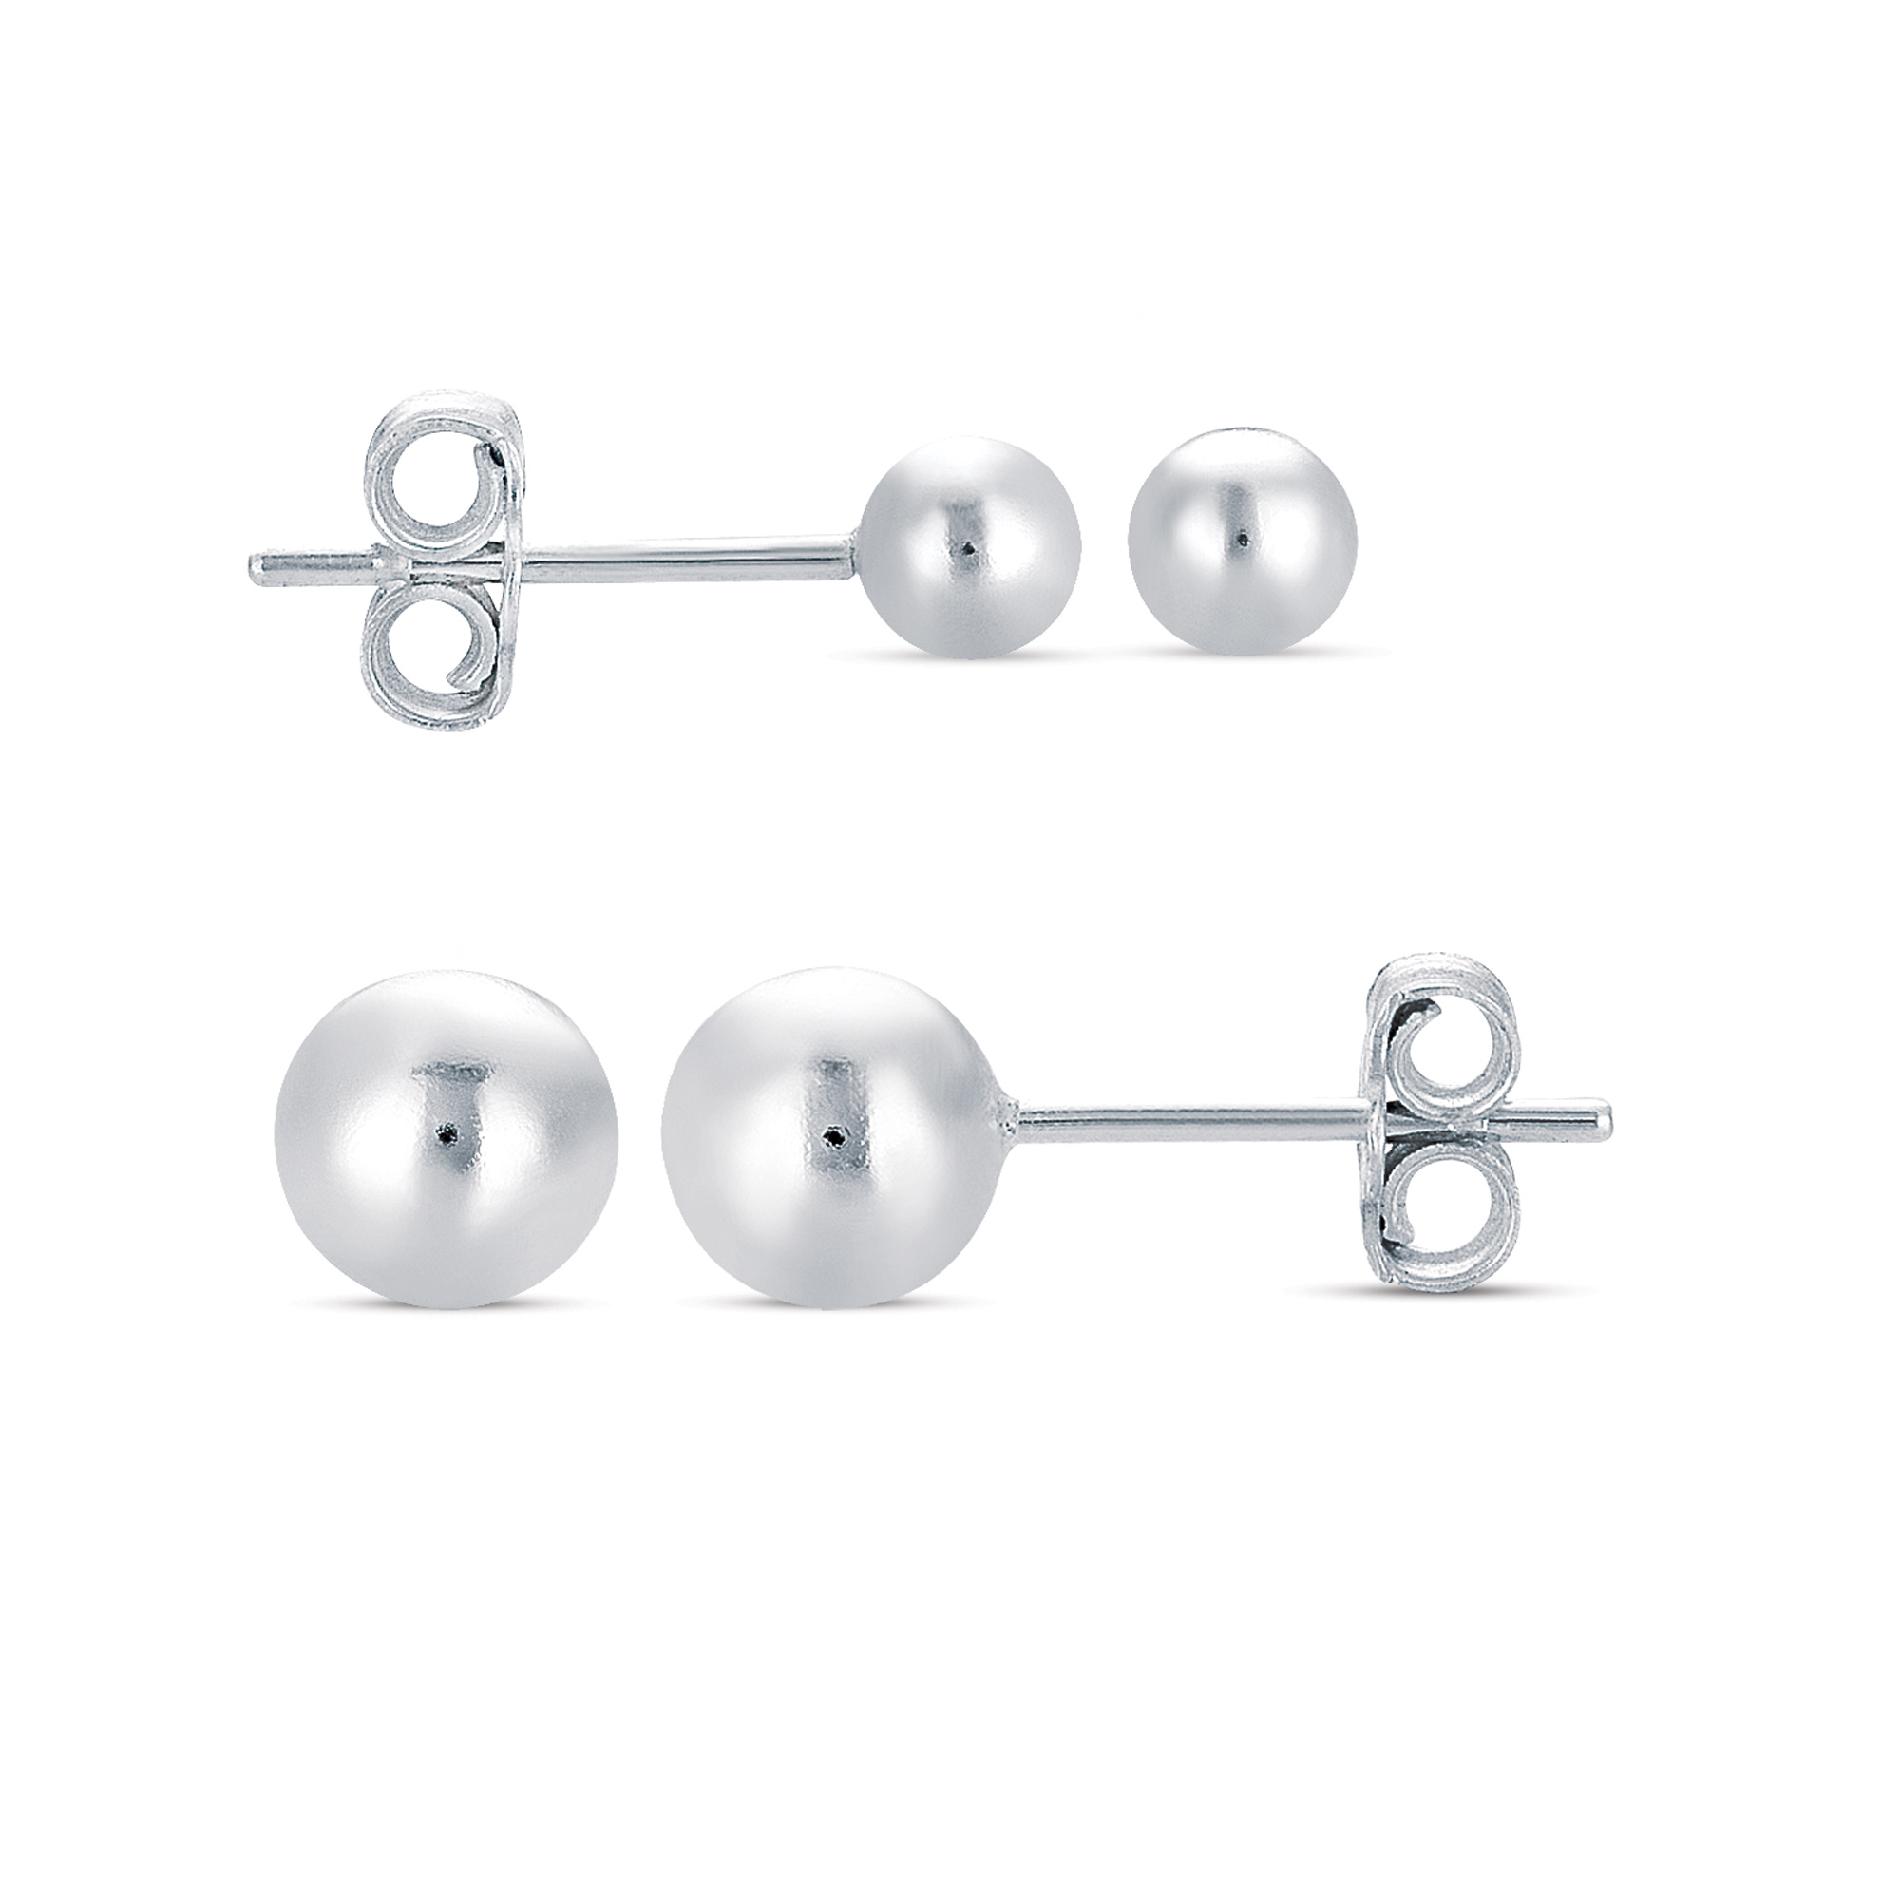 Sterling Silver 2 Pair Earrings Set